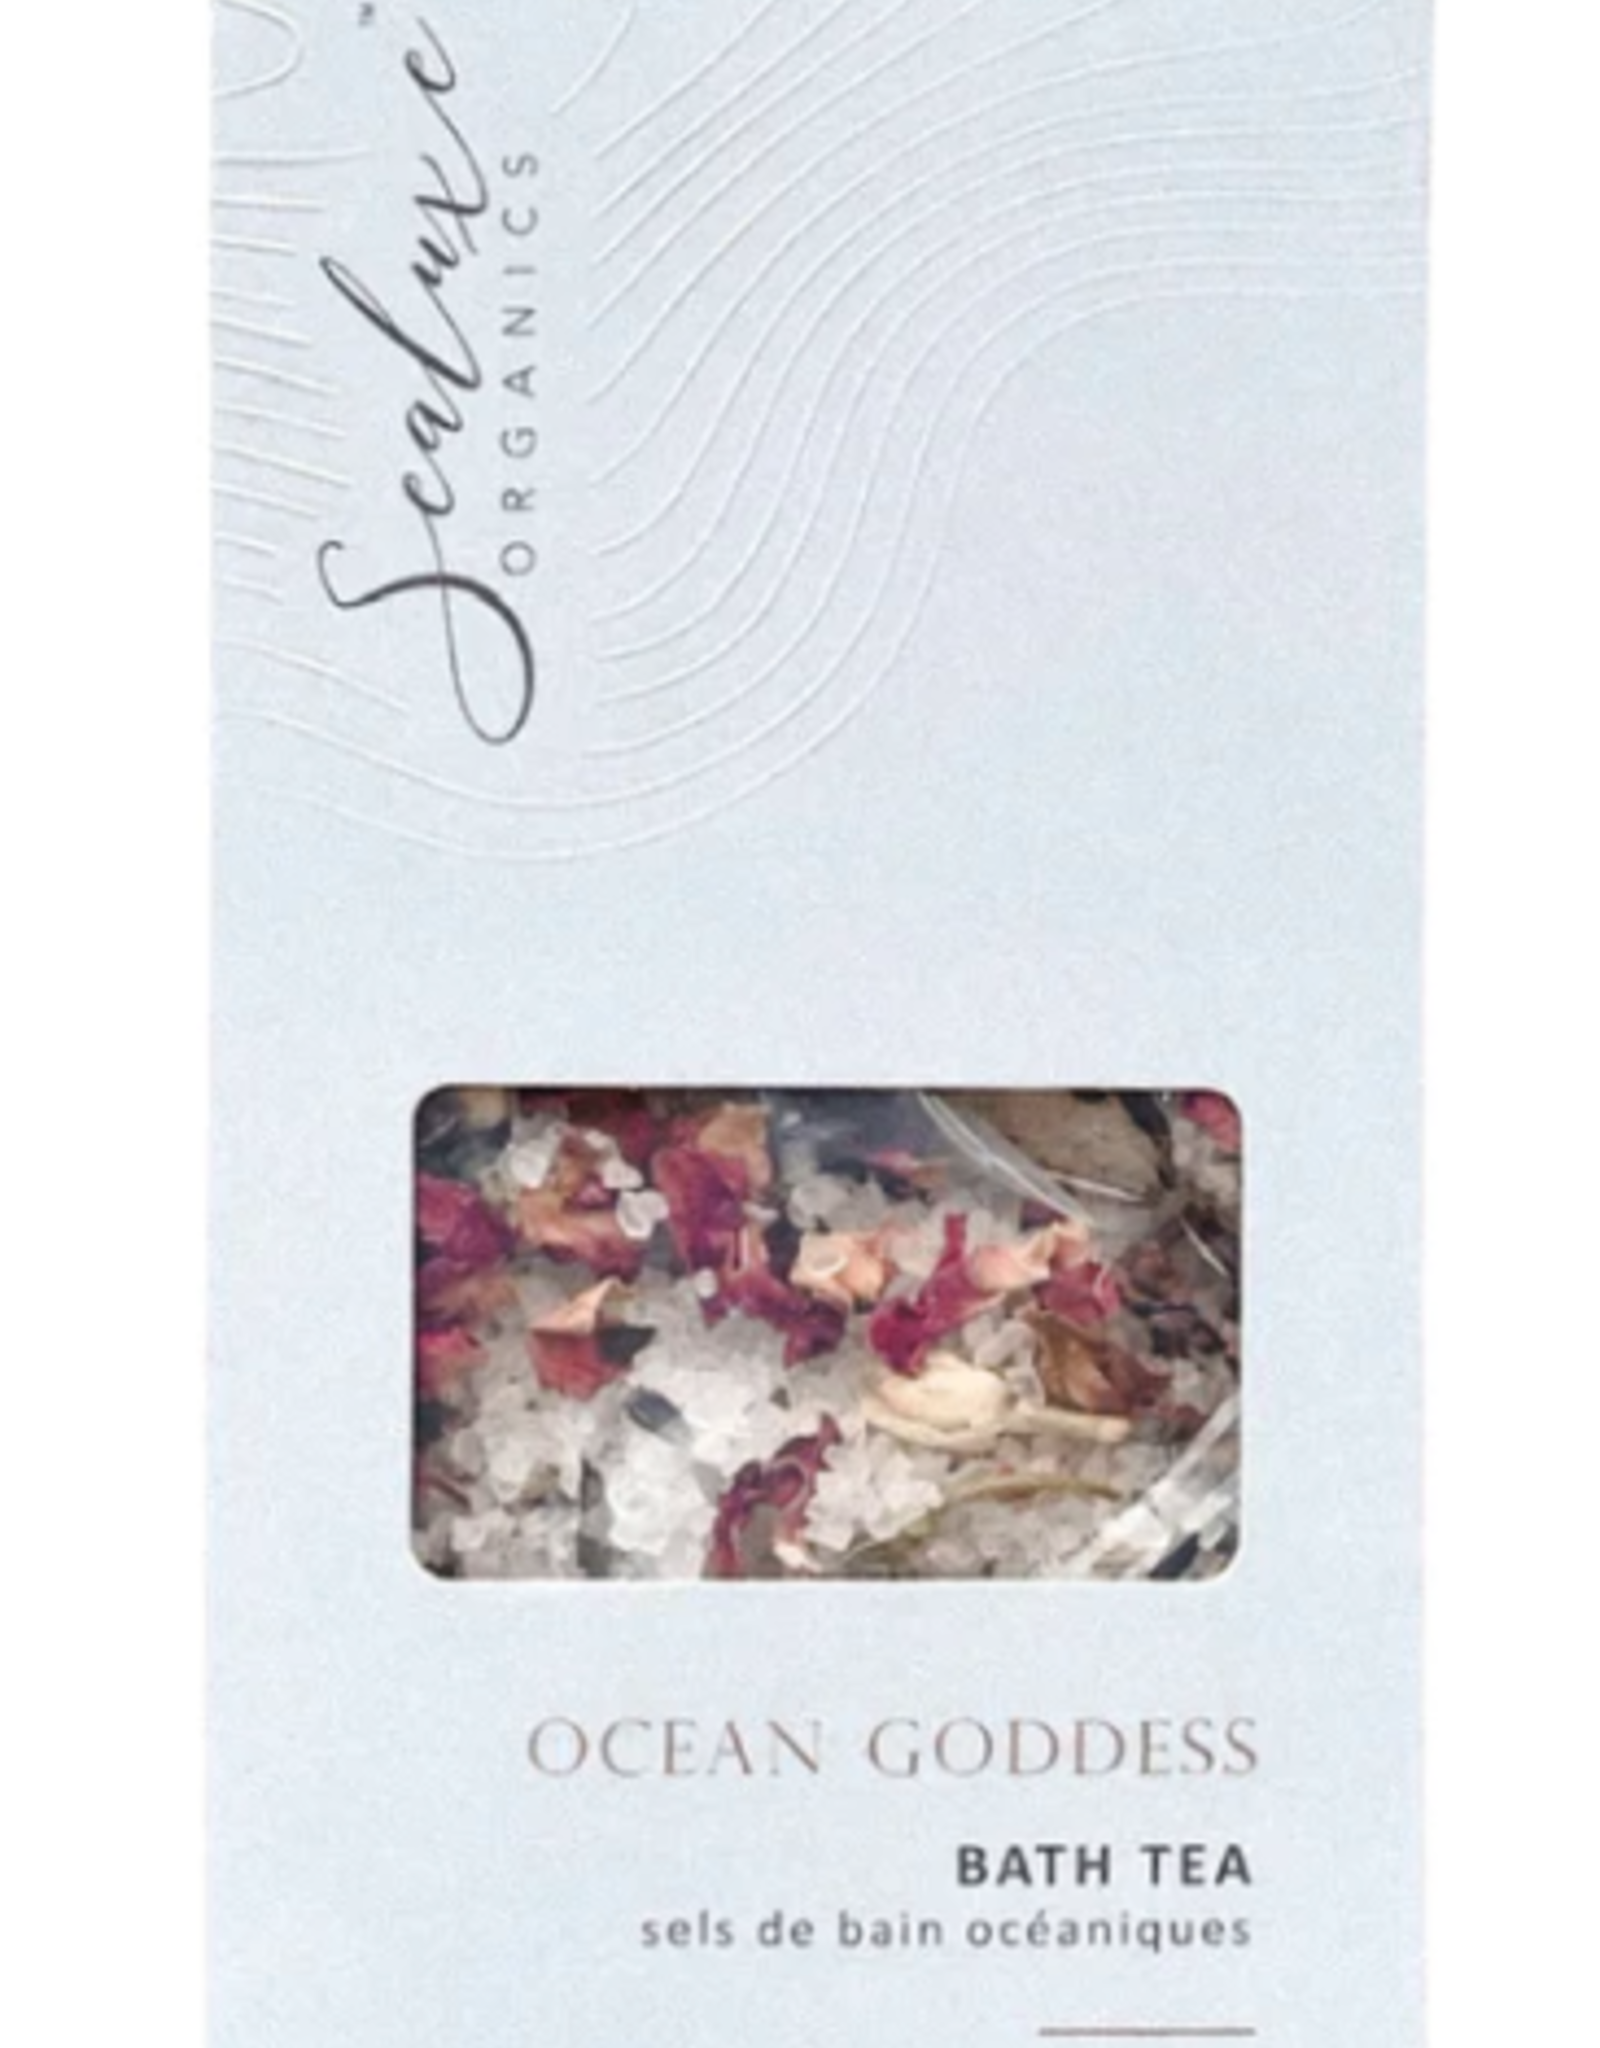 SeaLuxe Ocean Goddess Bath Tea 200g